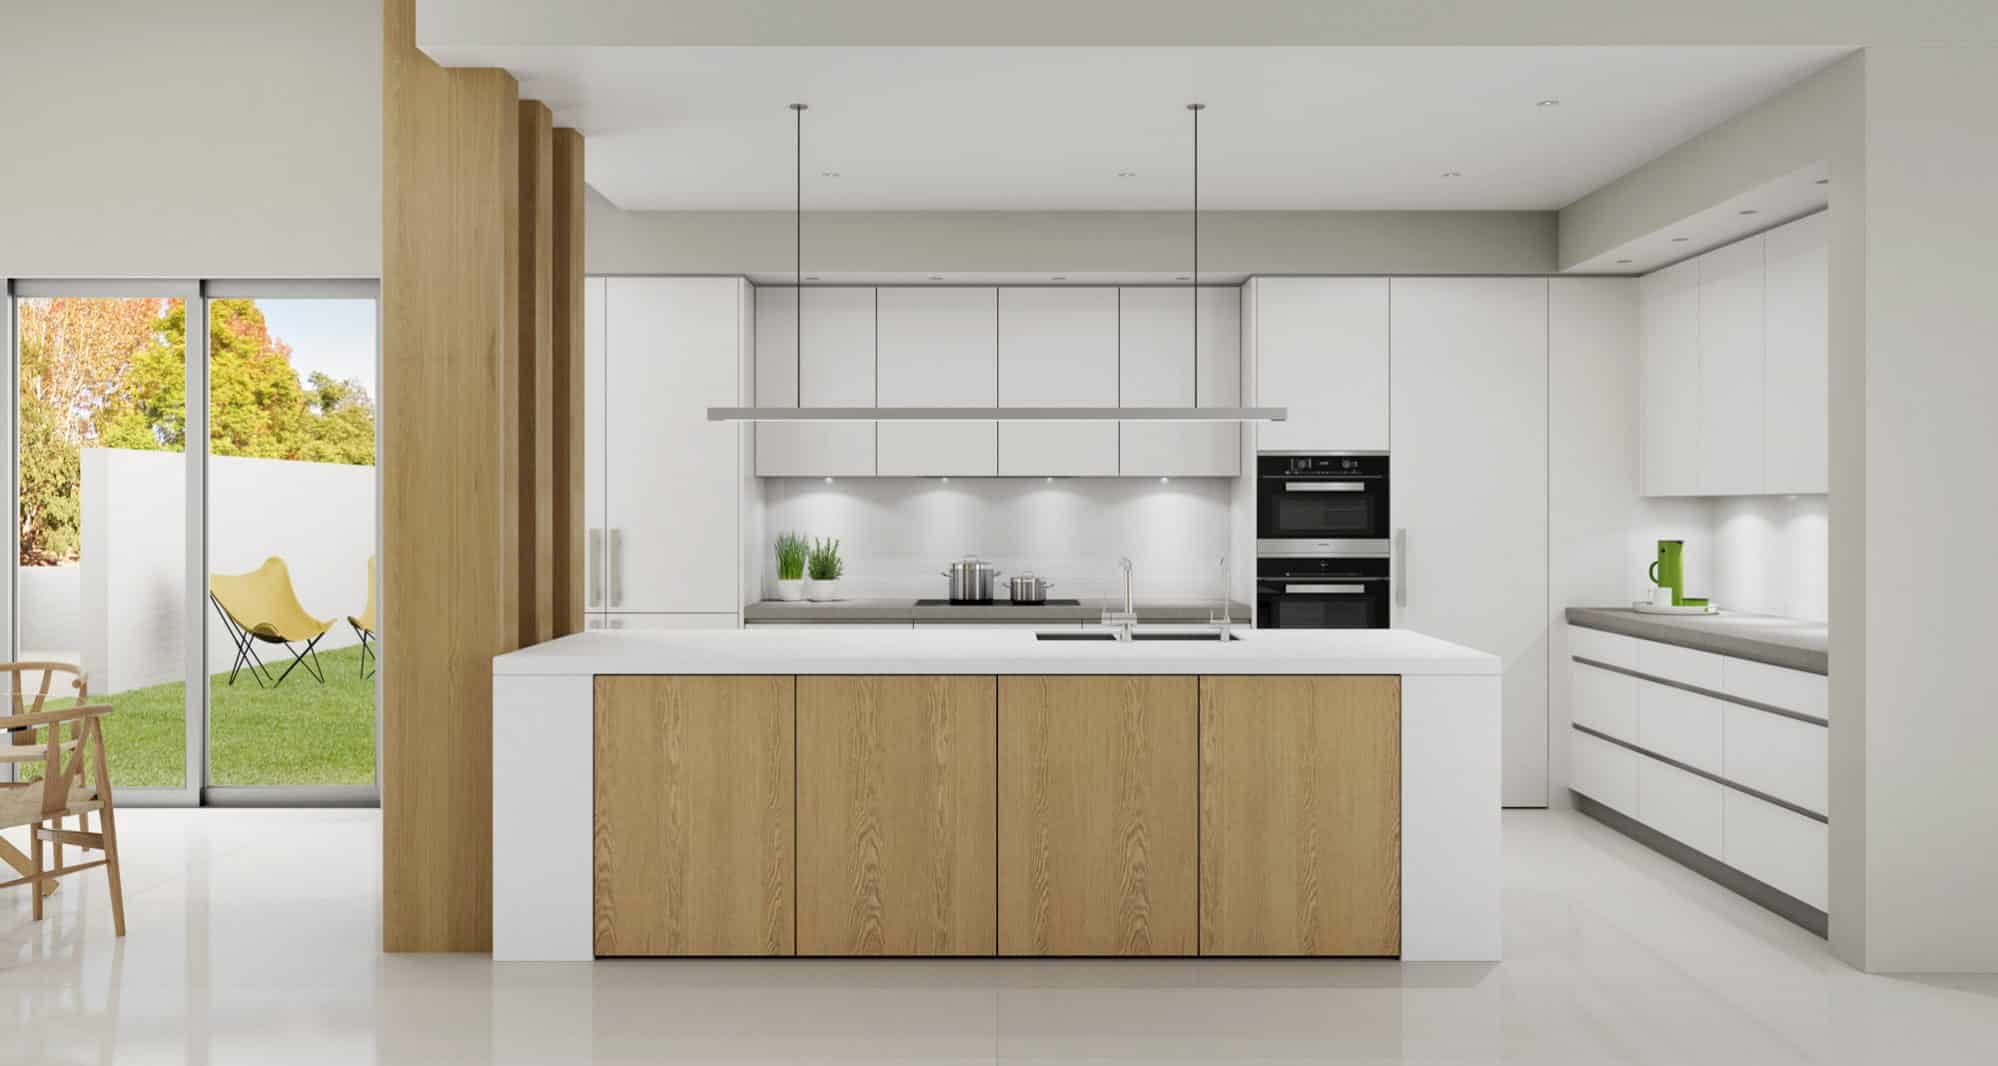 کابینت سفید و رنگ چوب روشن مات در آشپزخانه مدرن اپن